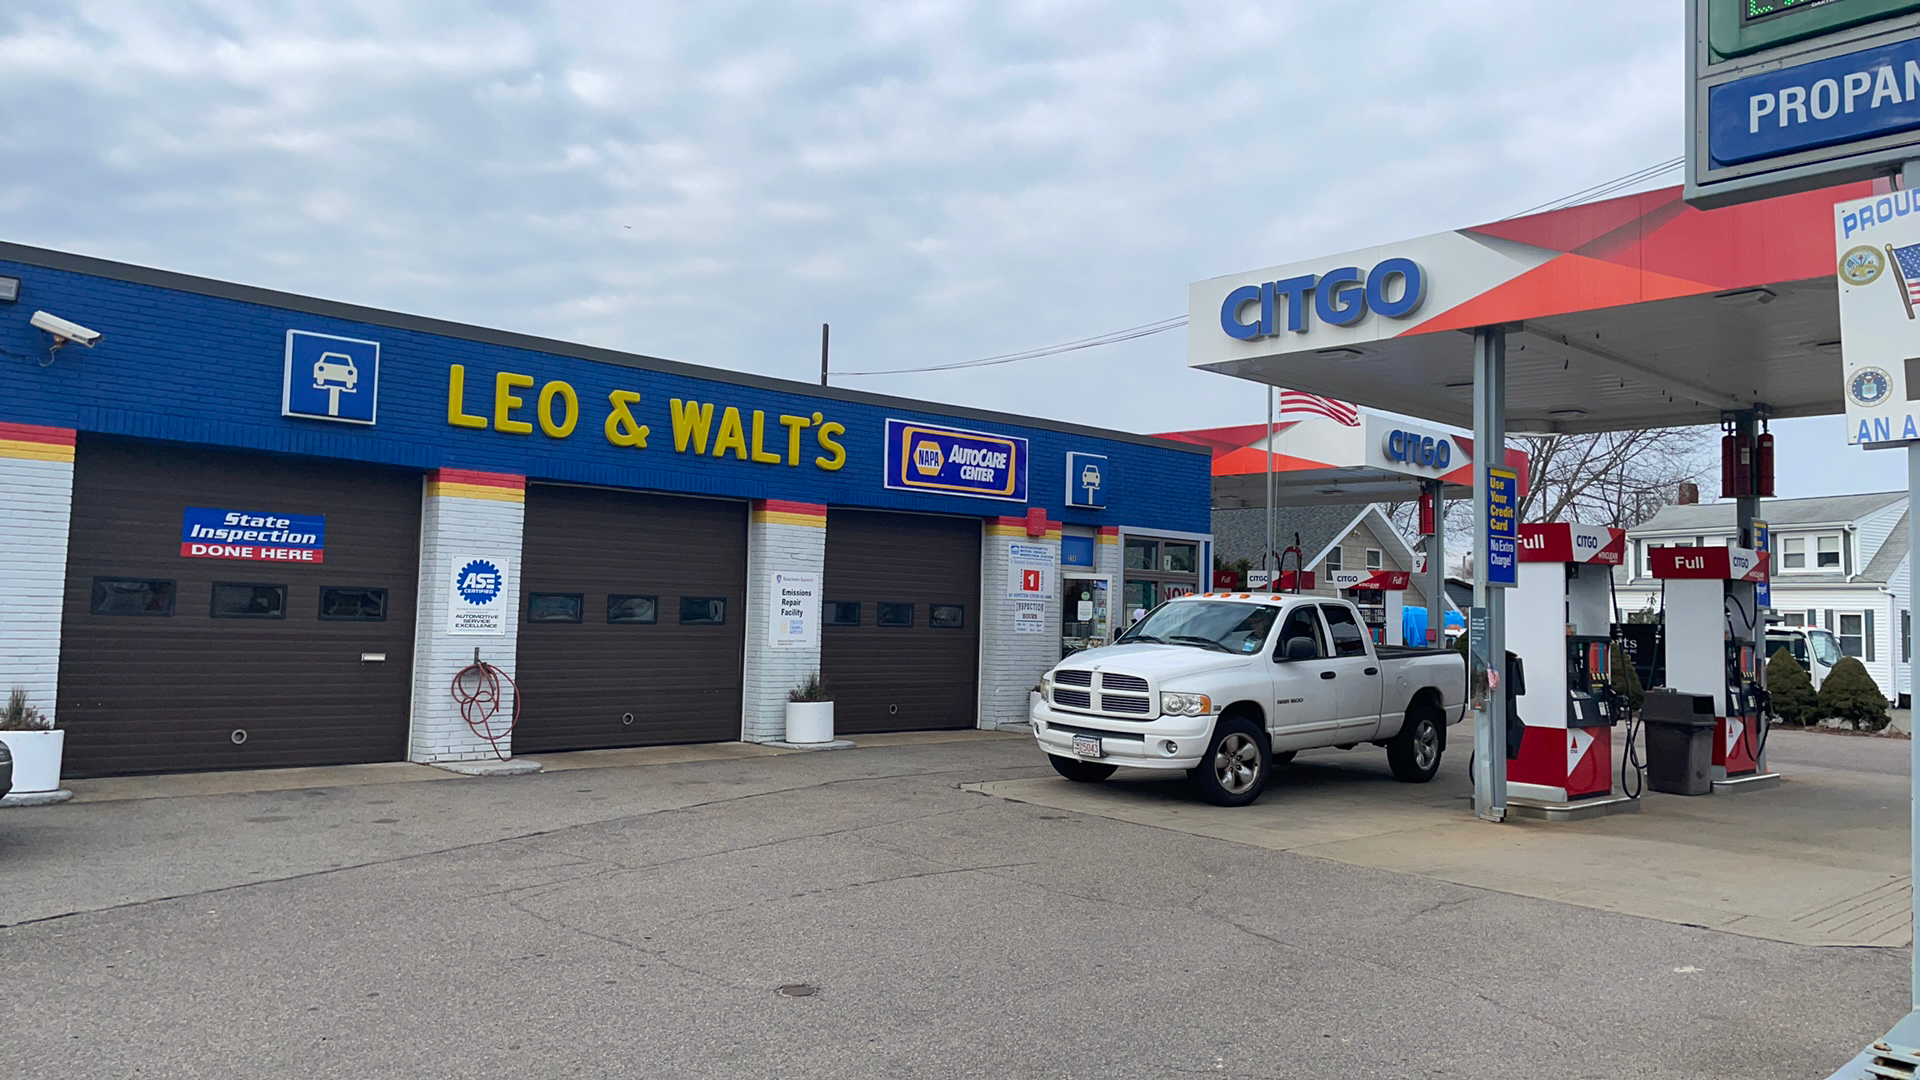 Citgo gas station ,Leo & walt’s